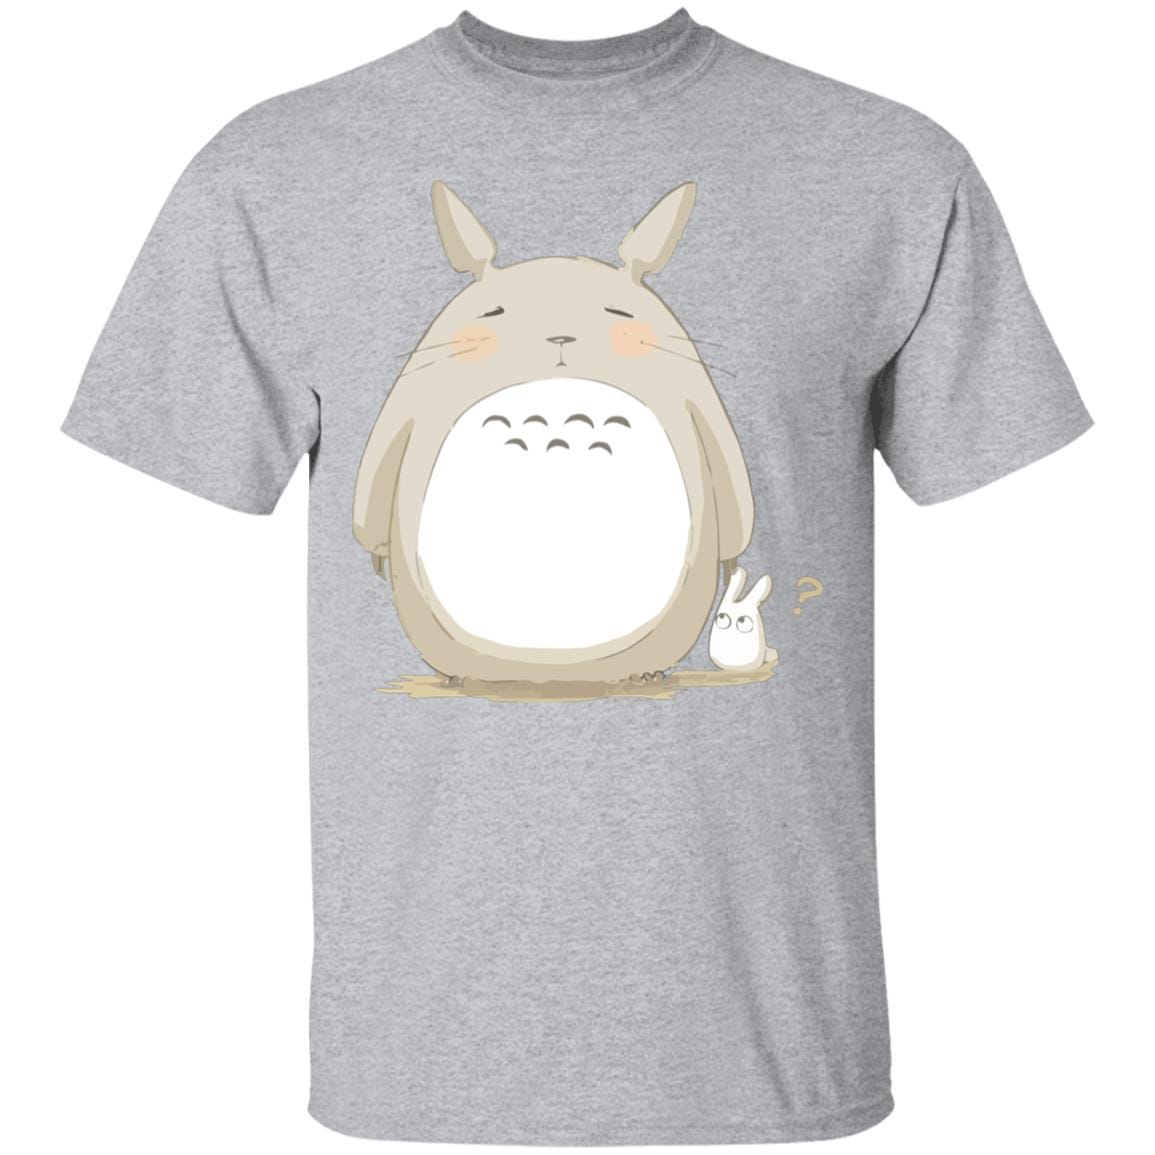 Cute Totoro Pinky Face T Shirt Ghibli Store ghibli.store